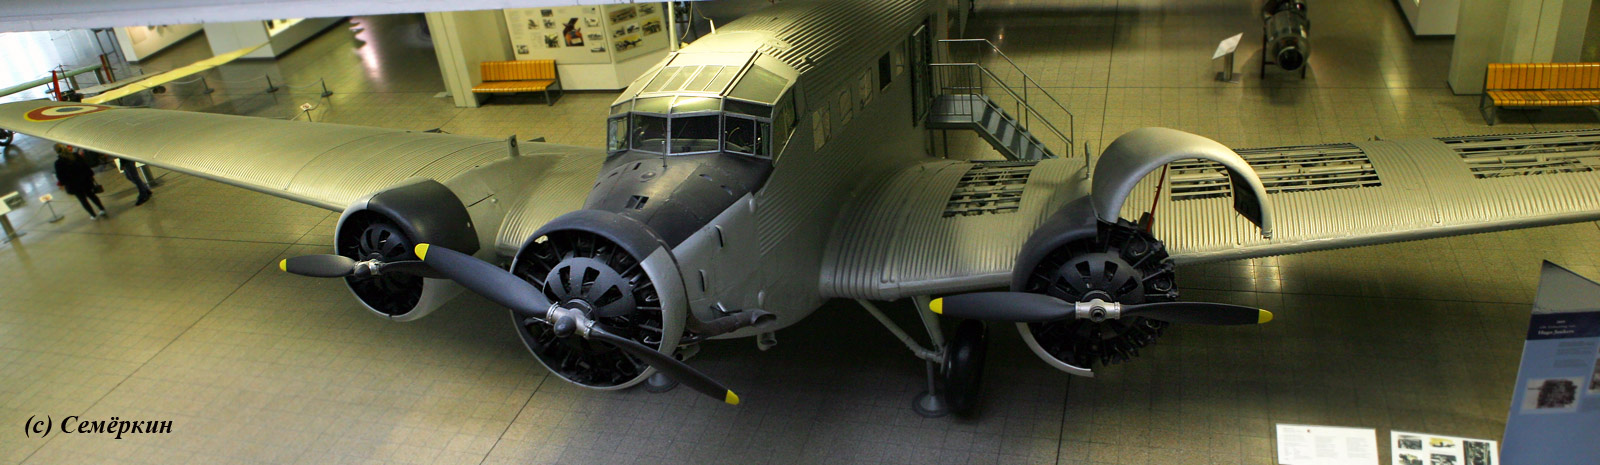 Мюнхен - Немецкий музей - авиация - Юнкерс Ju-52